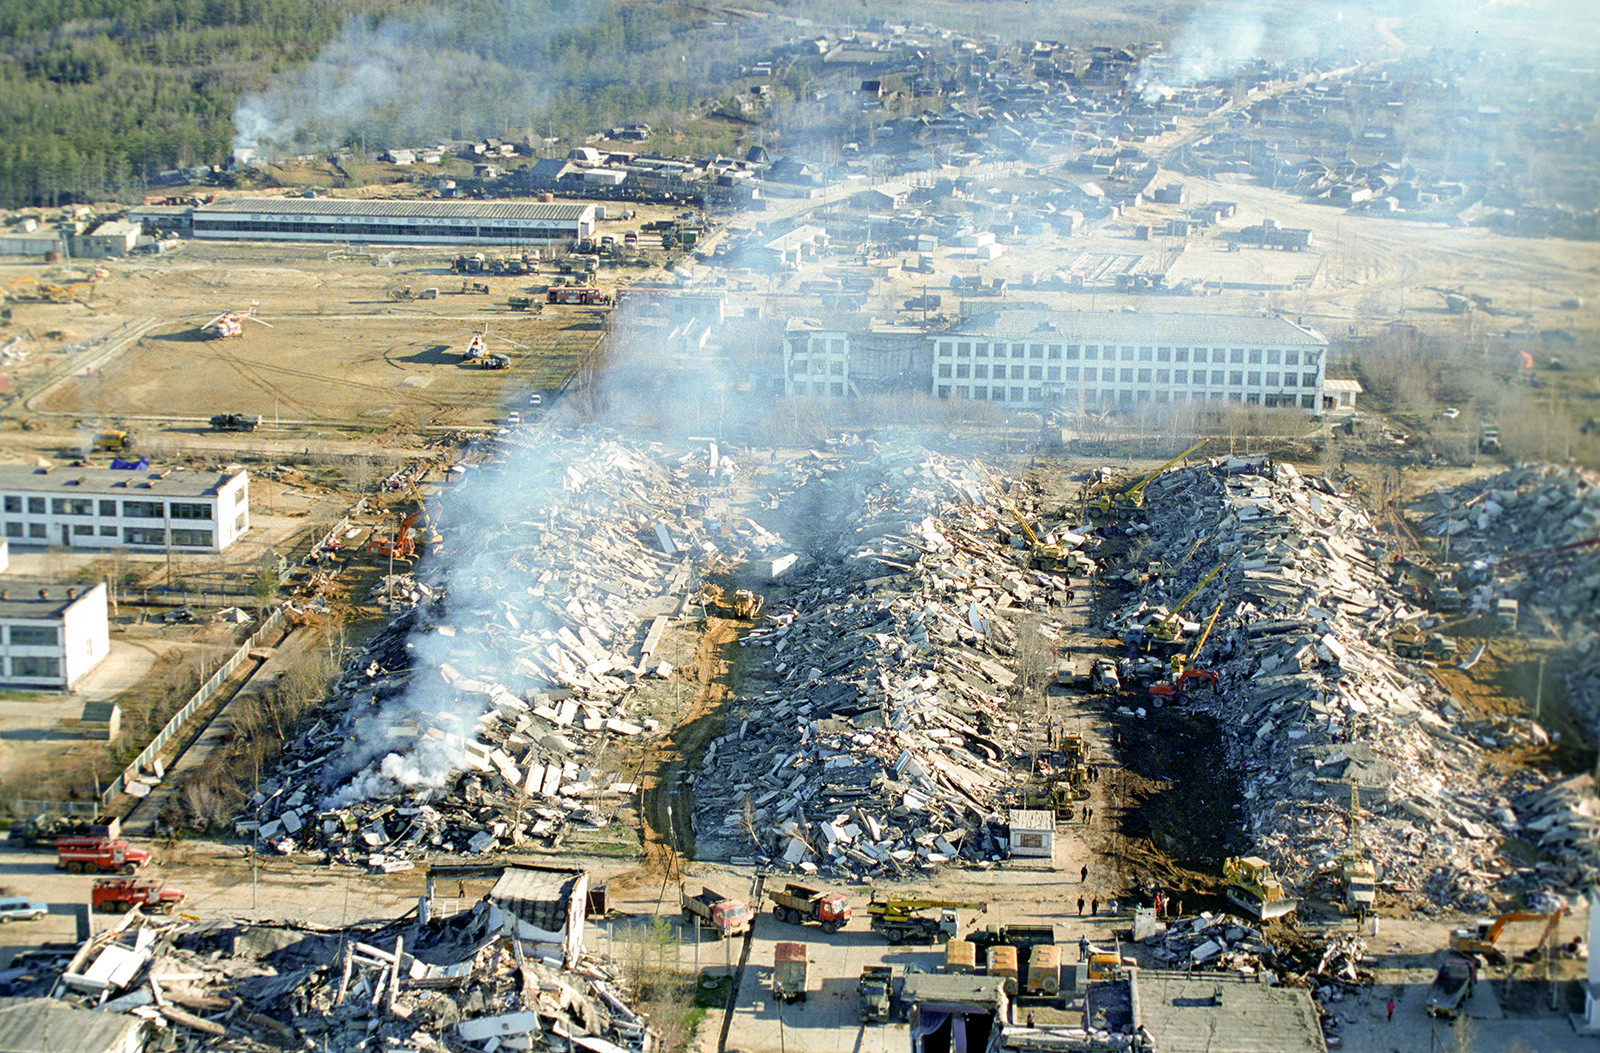 Земљотрес на Сахалину. Насеље Нефтегорск потпуно је уништено 27. маја 1995.